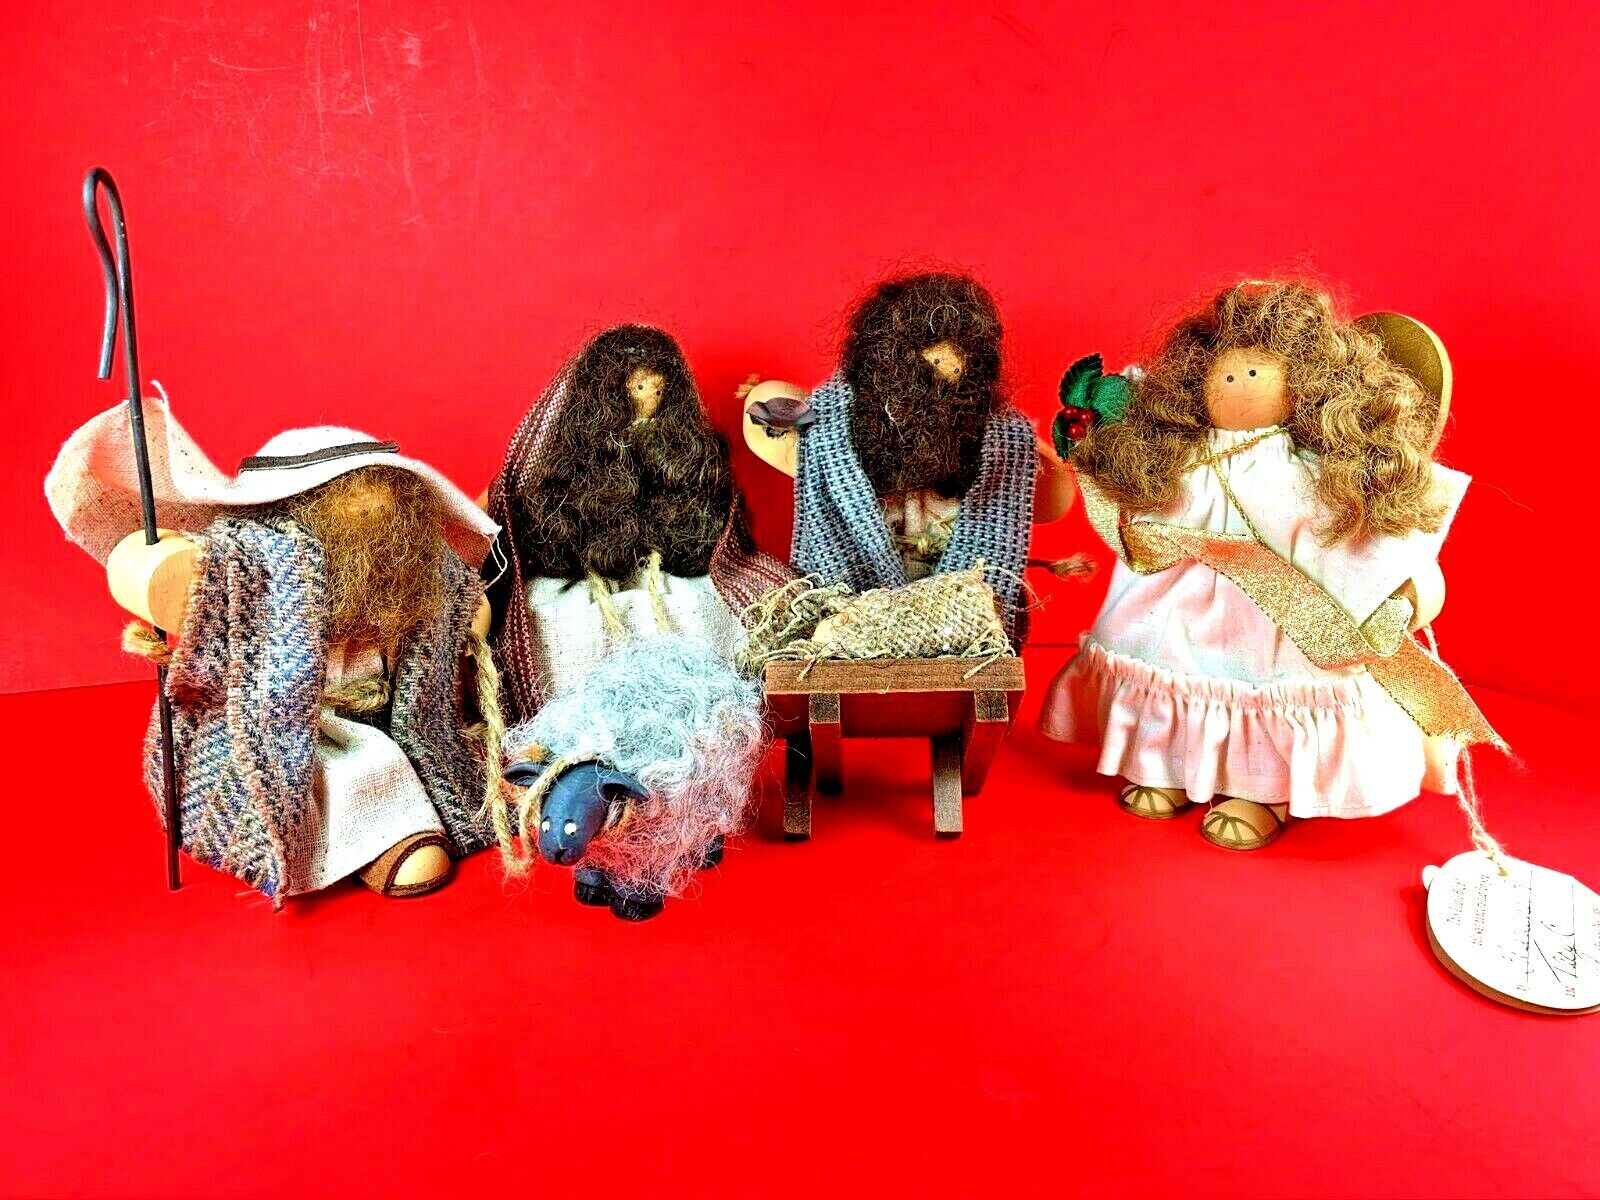 Lizzie High Wooden Folk Art Dolls Handcrafted Vintage 5 Piece Nativity Set 